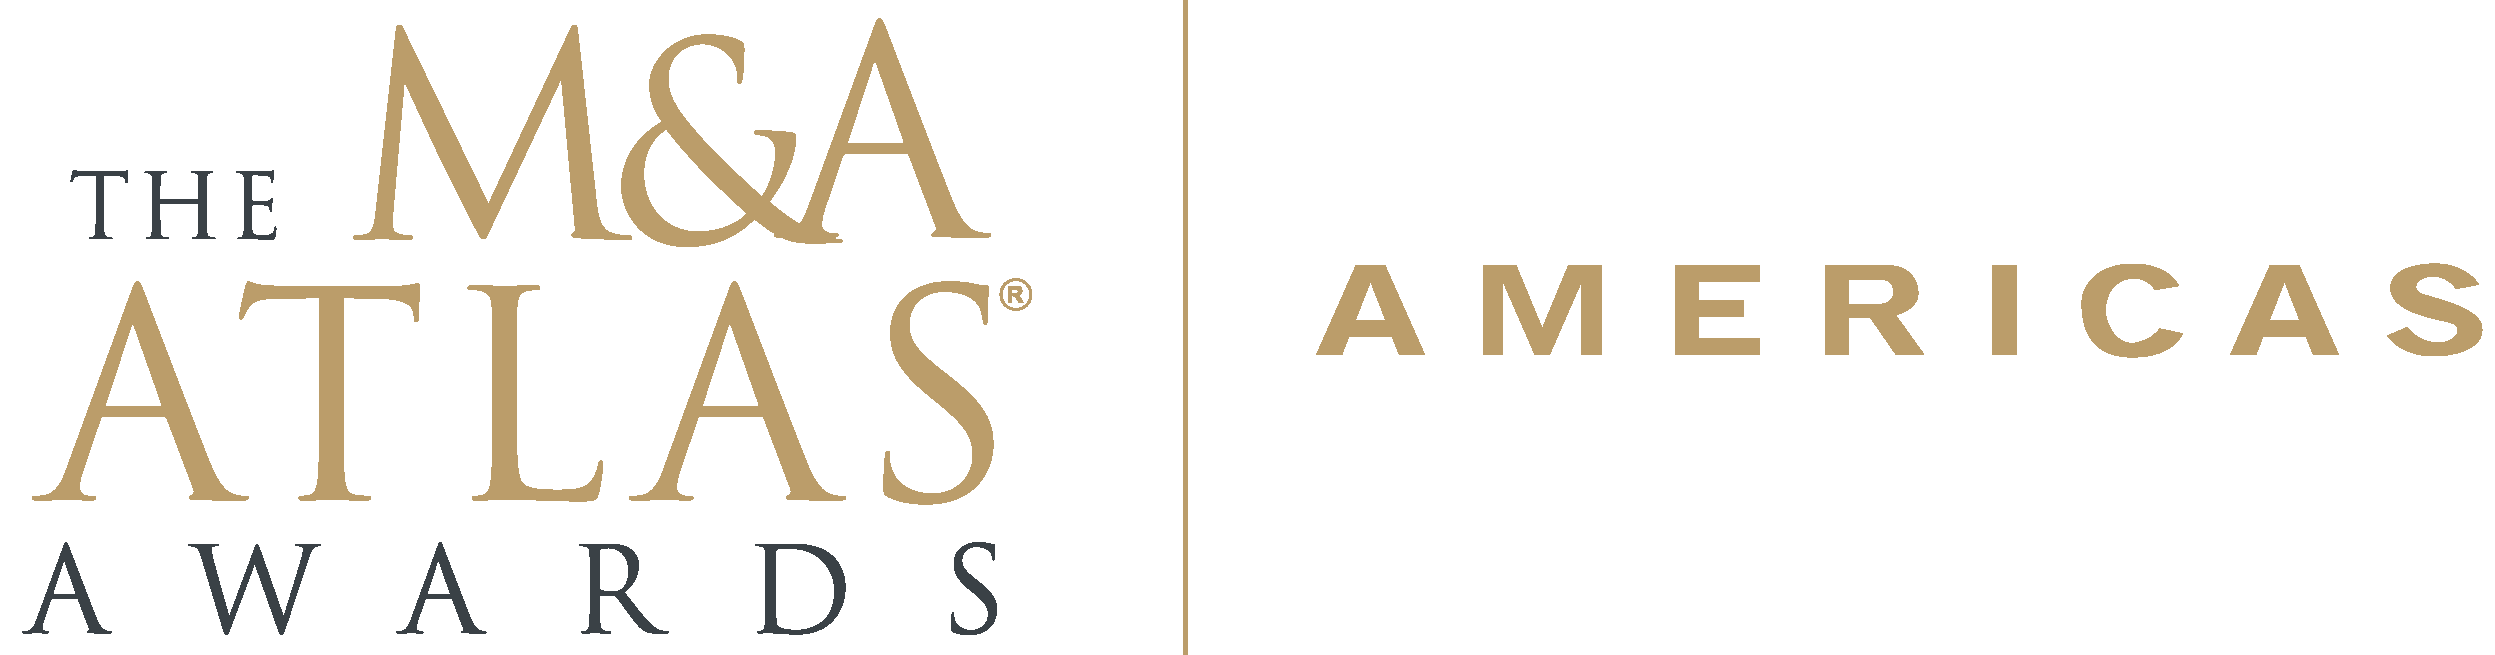 Americas Atlas 